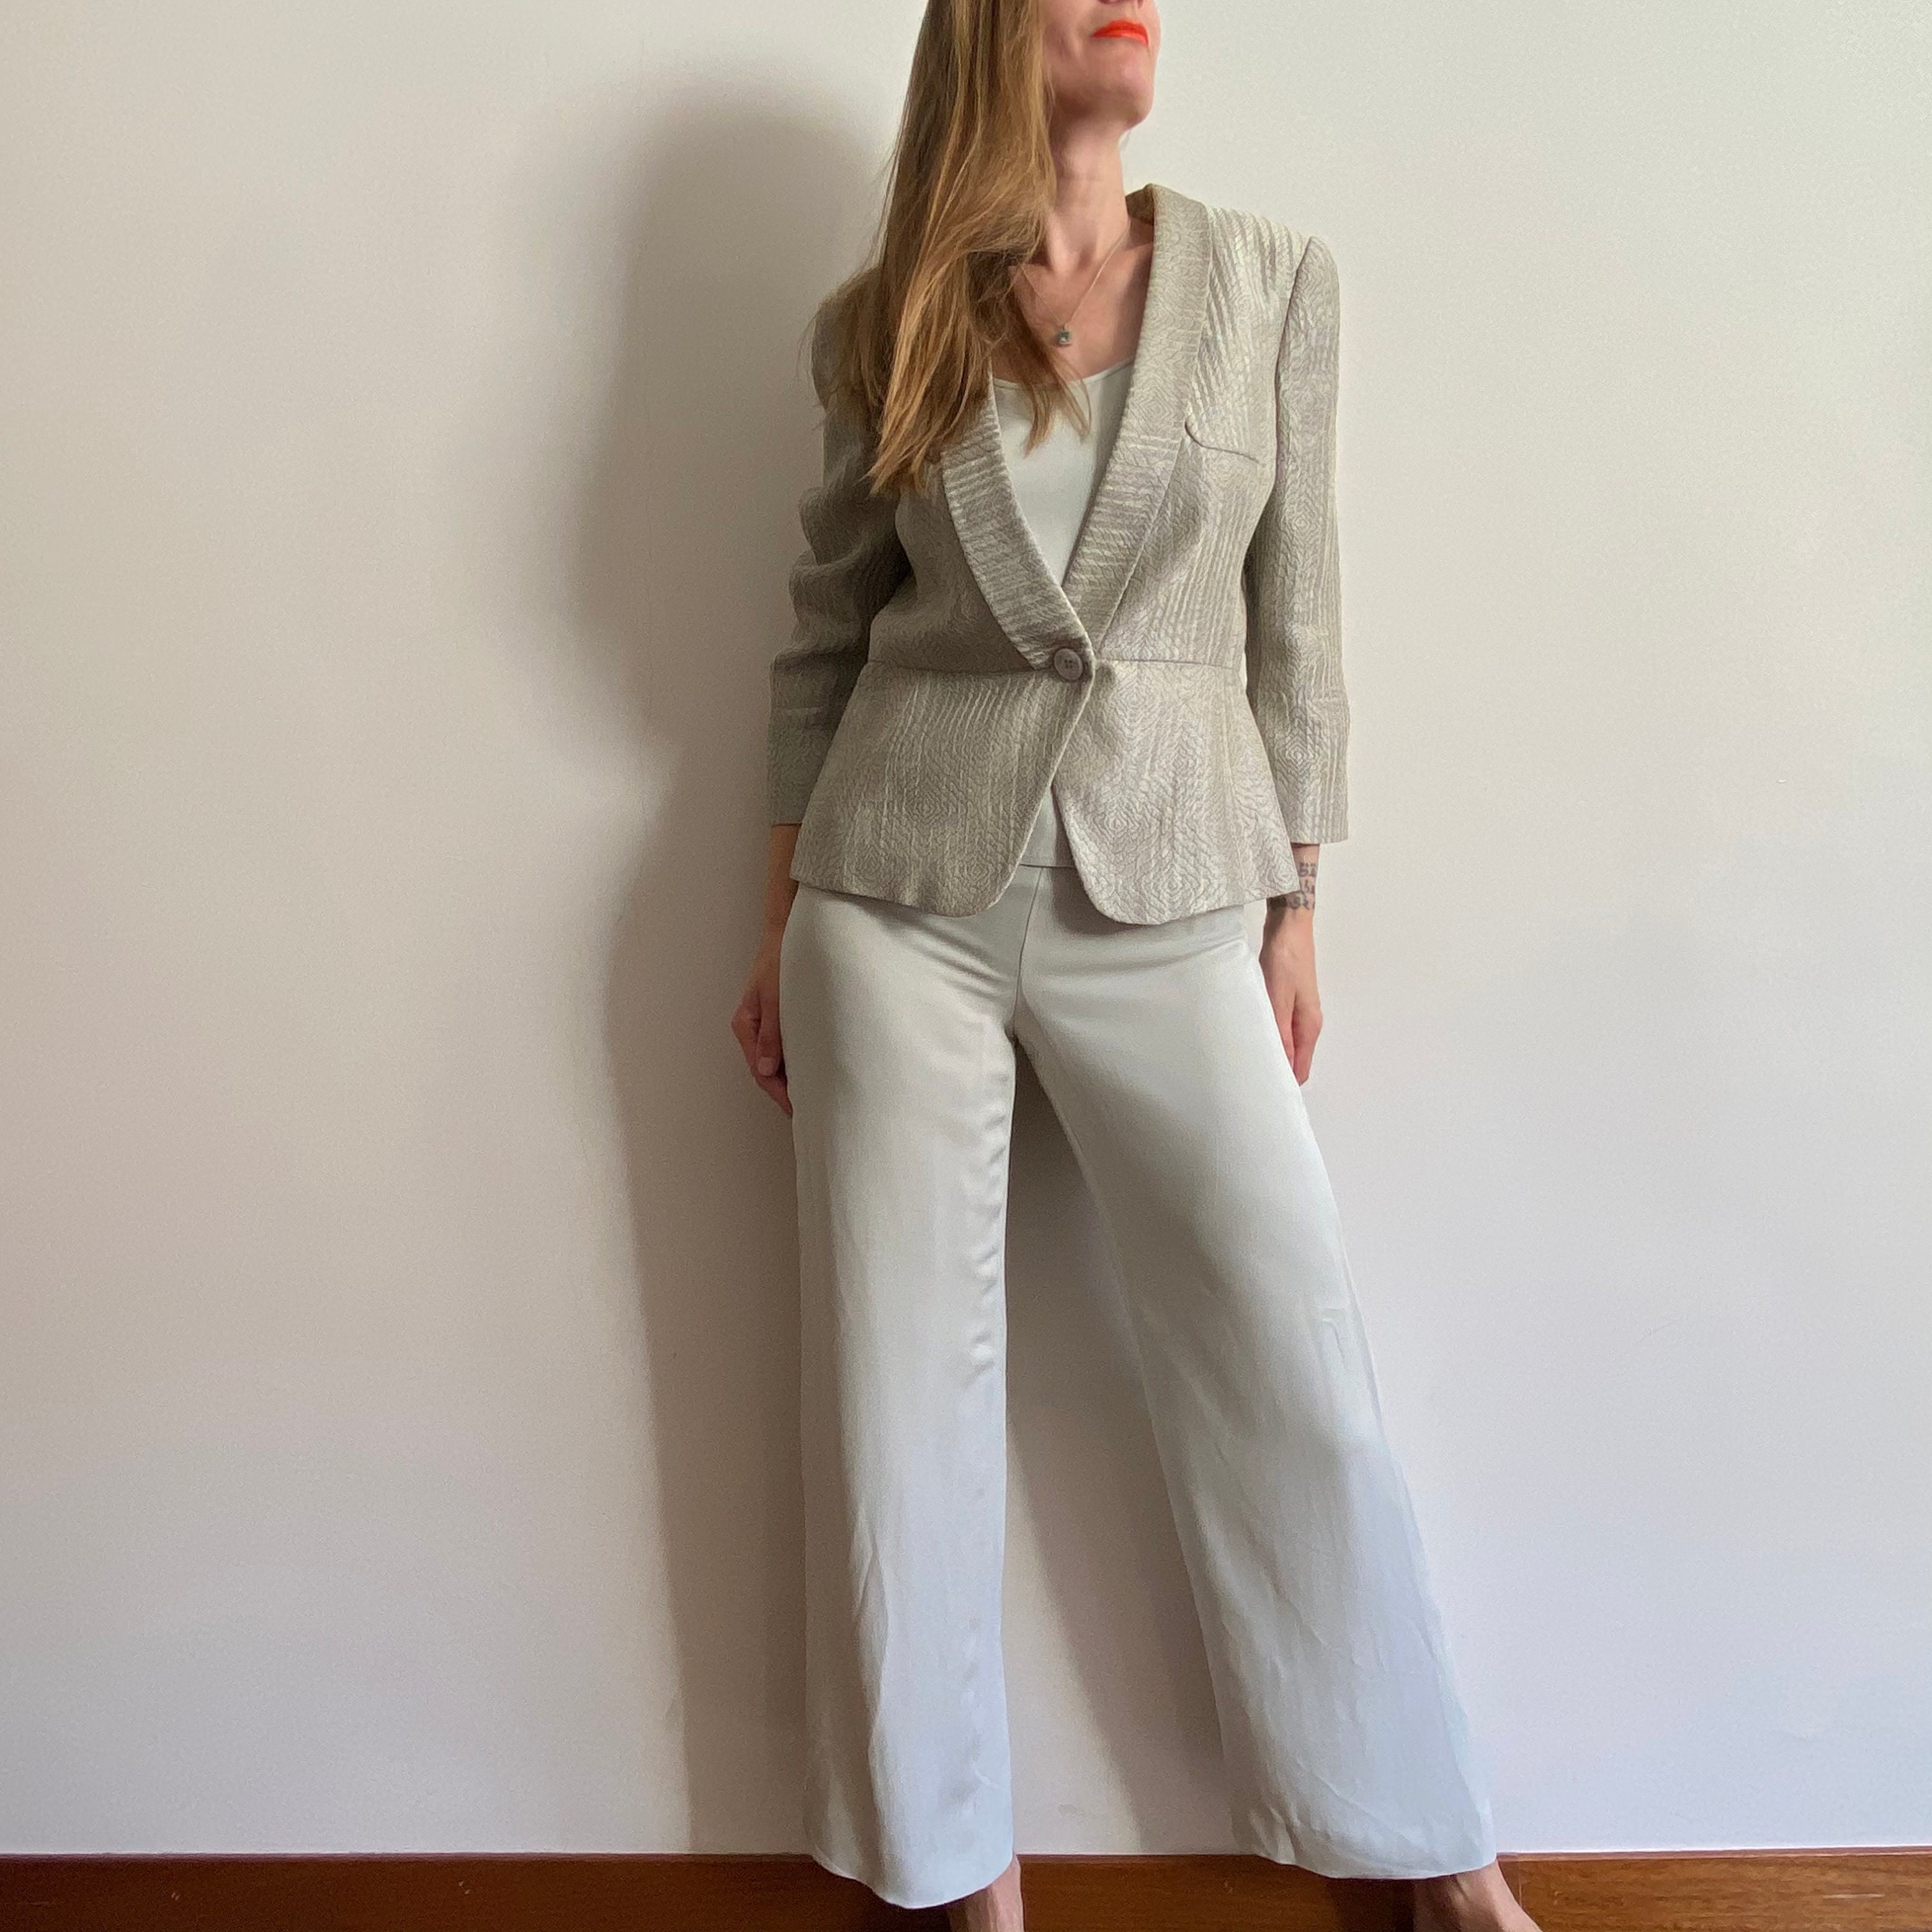 Armani Suit Women - Etsy